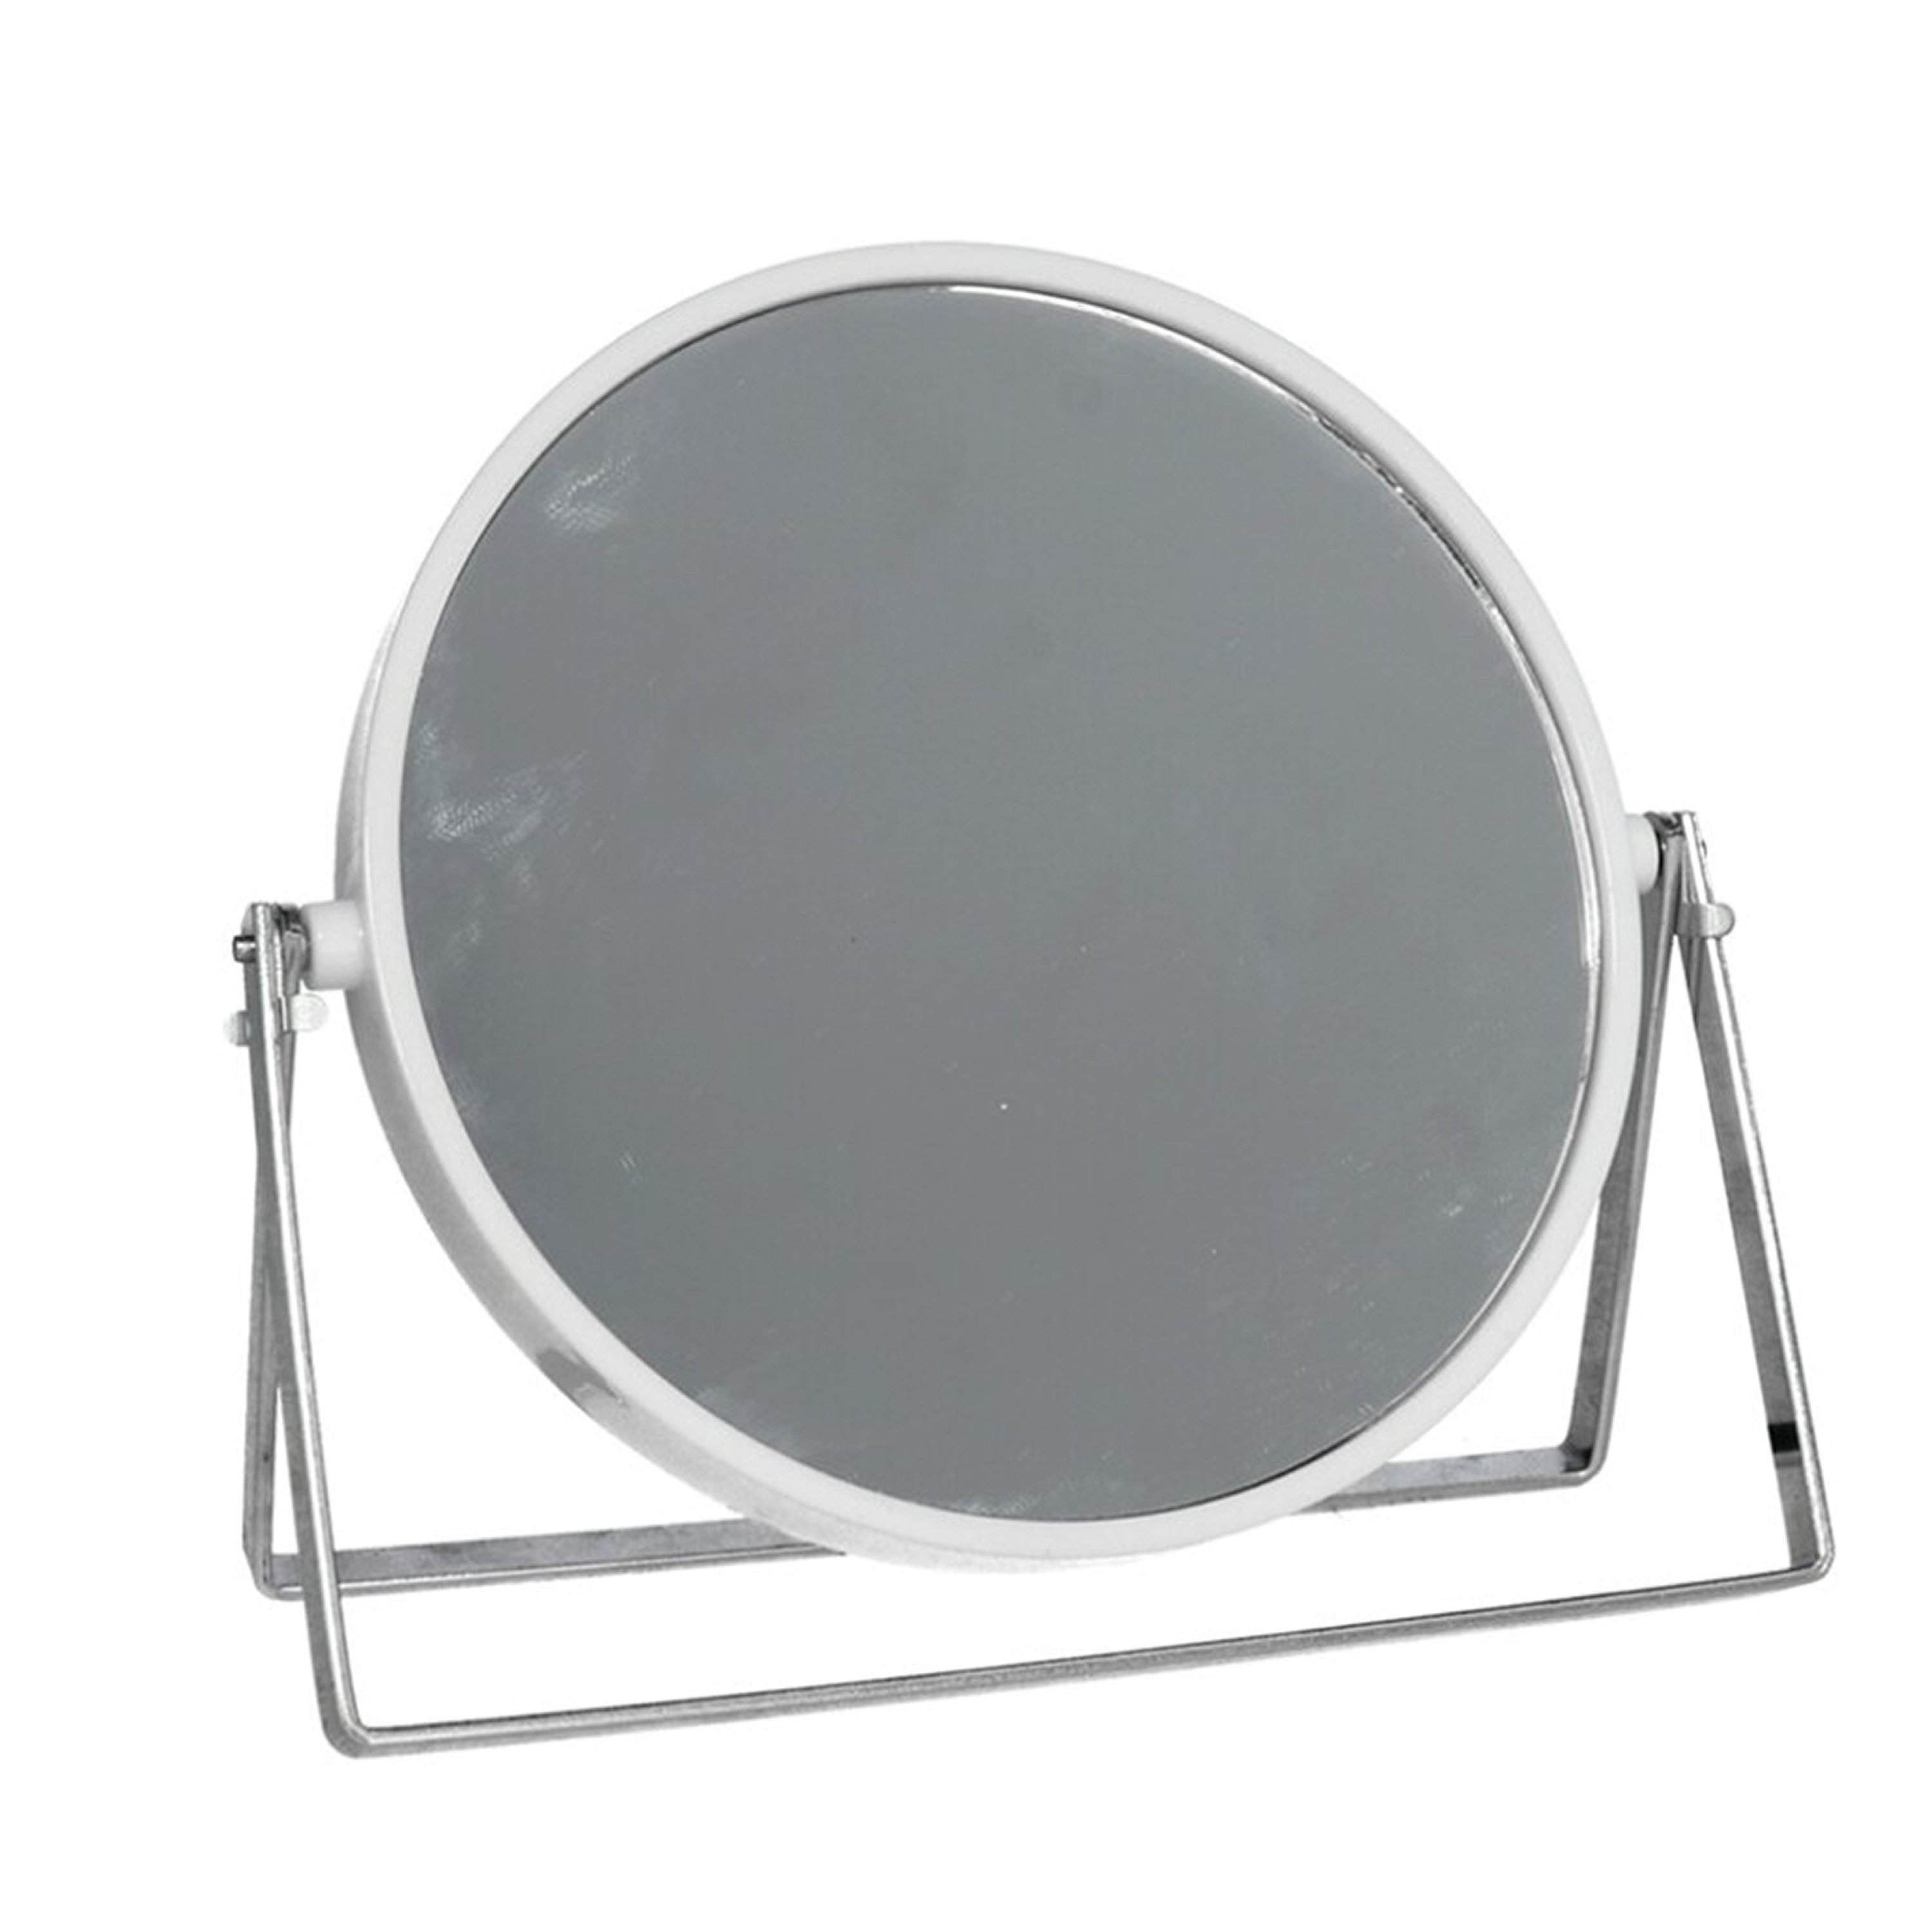 Make-up spiegel 2-zijdig gebruik vergrotend dia 18 cm wit-zilver